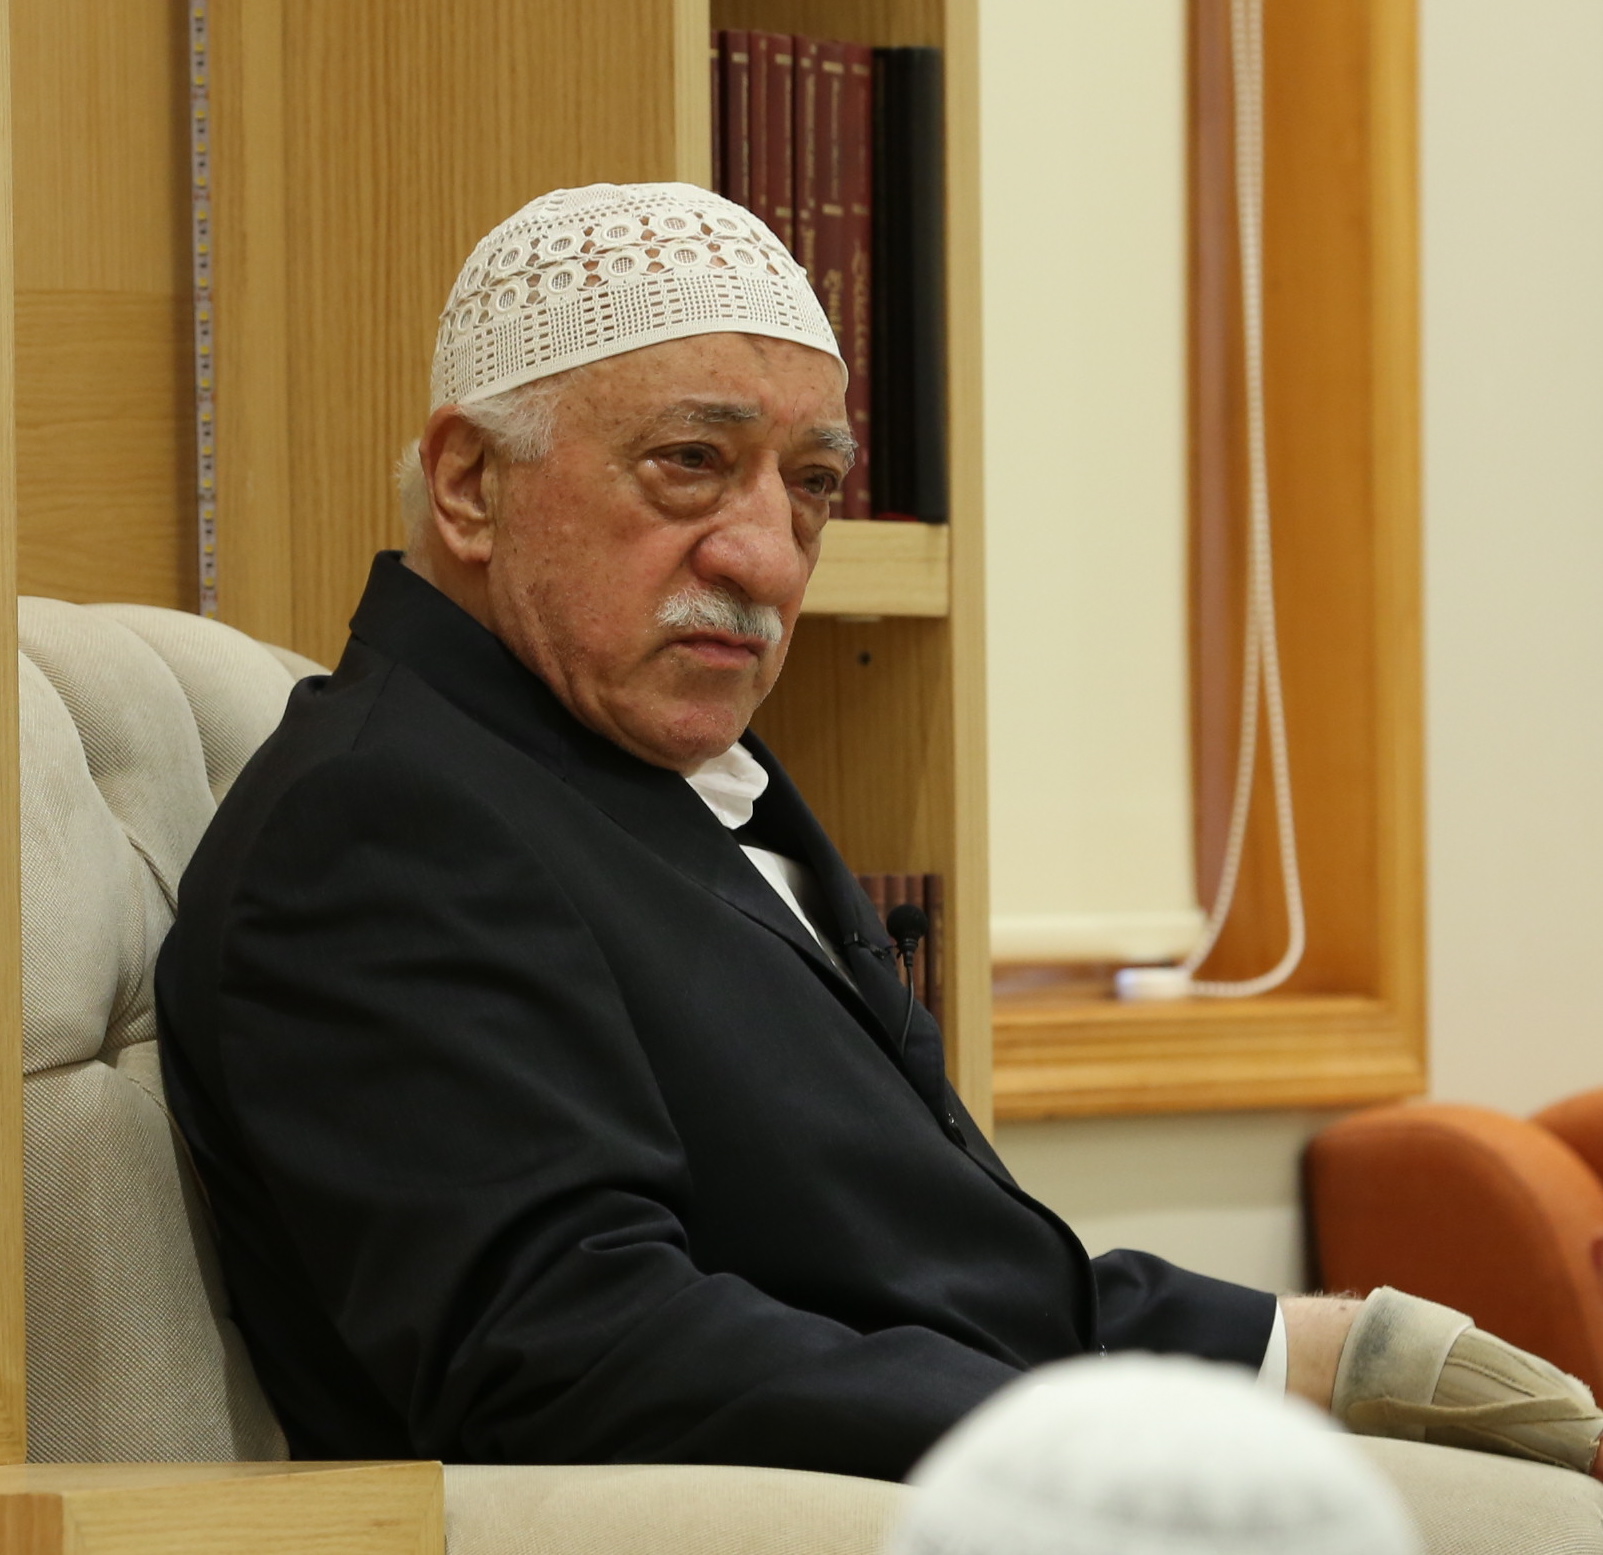 Turkey urges Pakistan to close 'Gulen' institutions